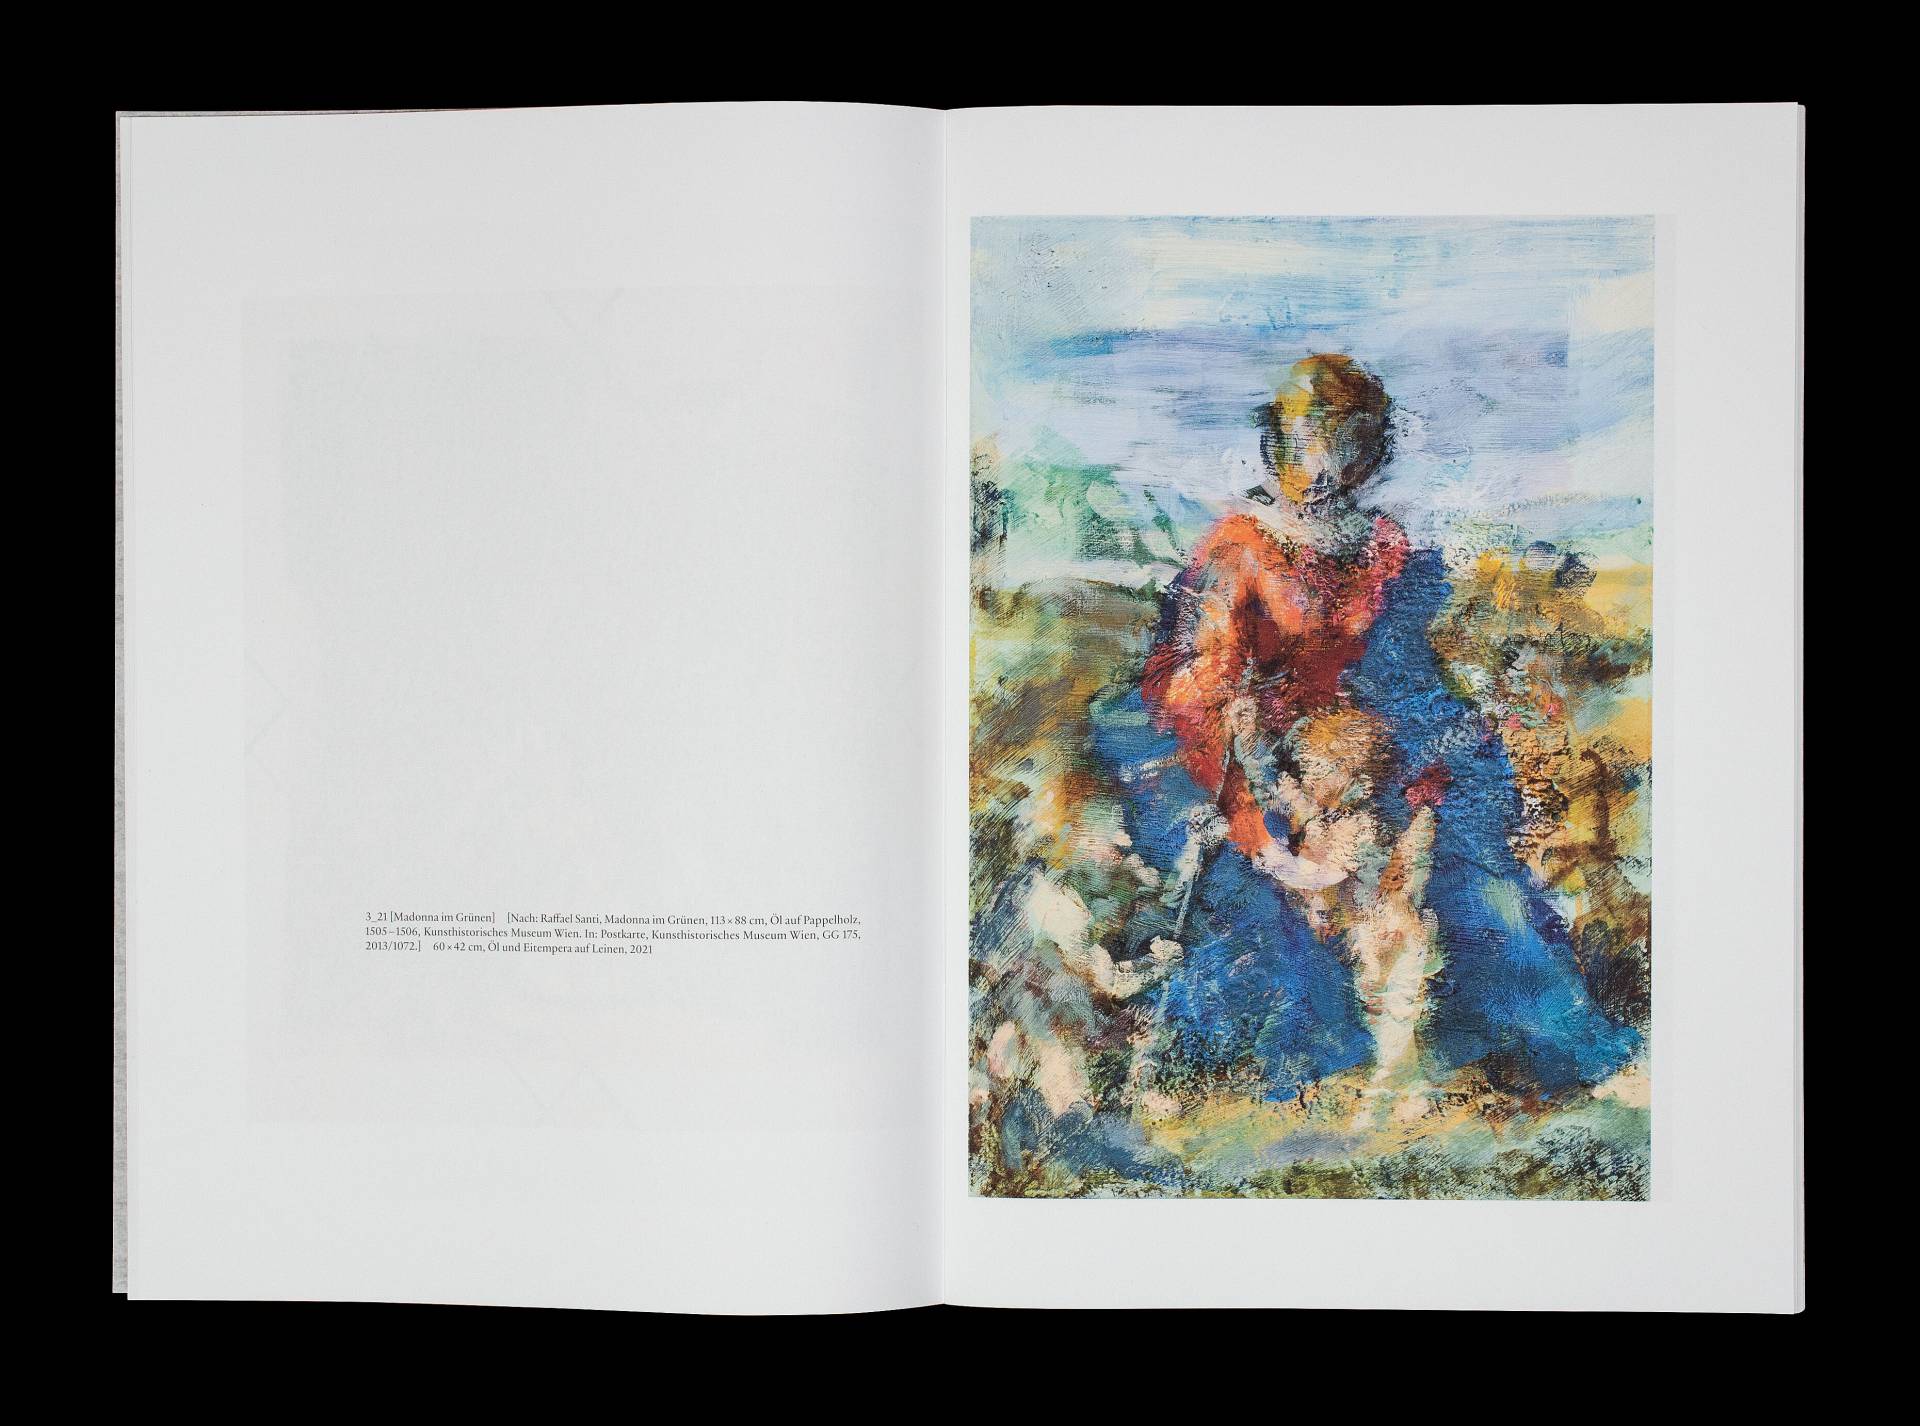 Broschüre zur Ausstellung »Jochen Plogsties: vor Tizian nach Monet« für die ASPN Galerie Leipzig